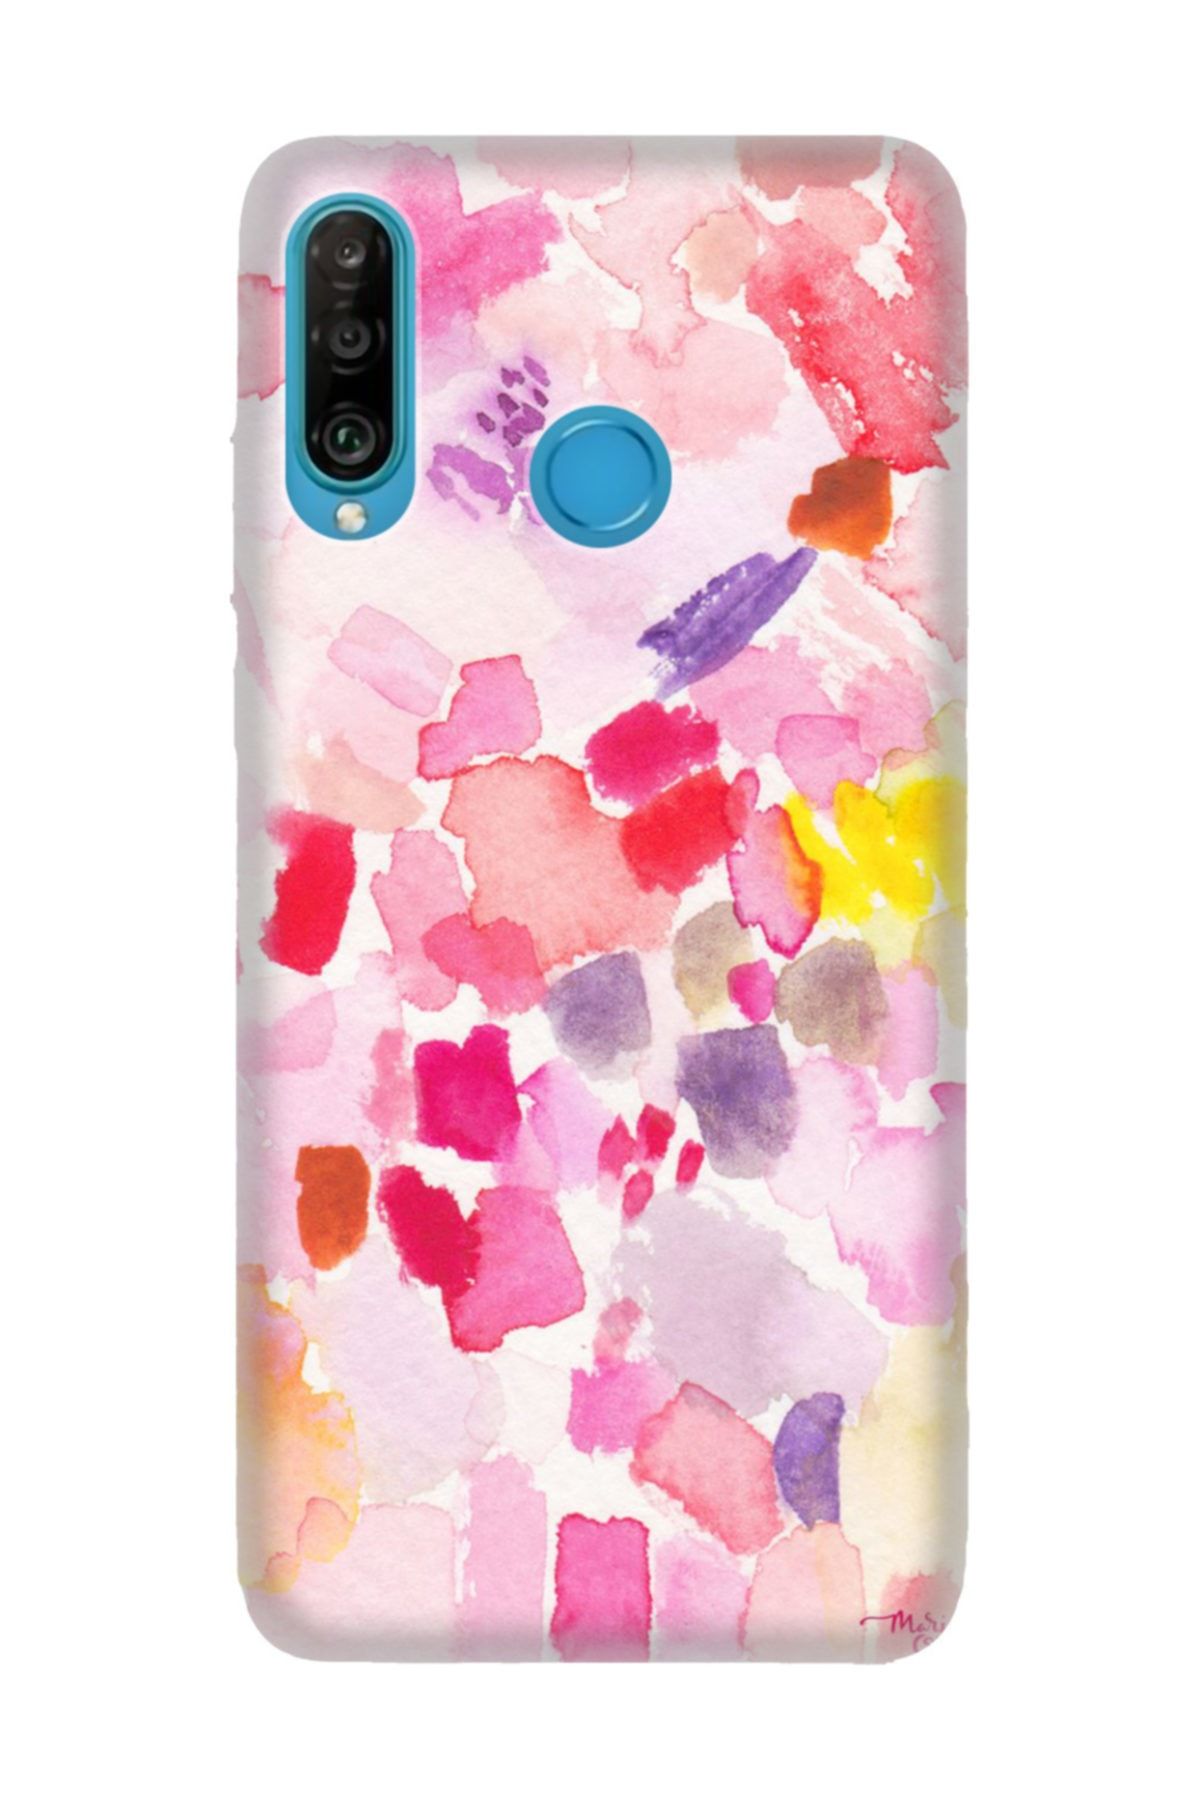 Cekuonline Huawei P30 Lite Kılıf Desenli Resimli Hd Silikon Telefon Kabı Kapak - Holly